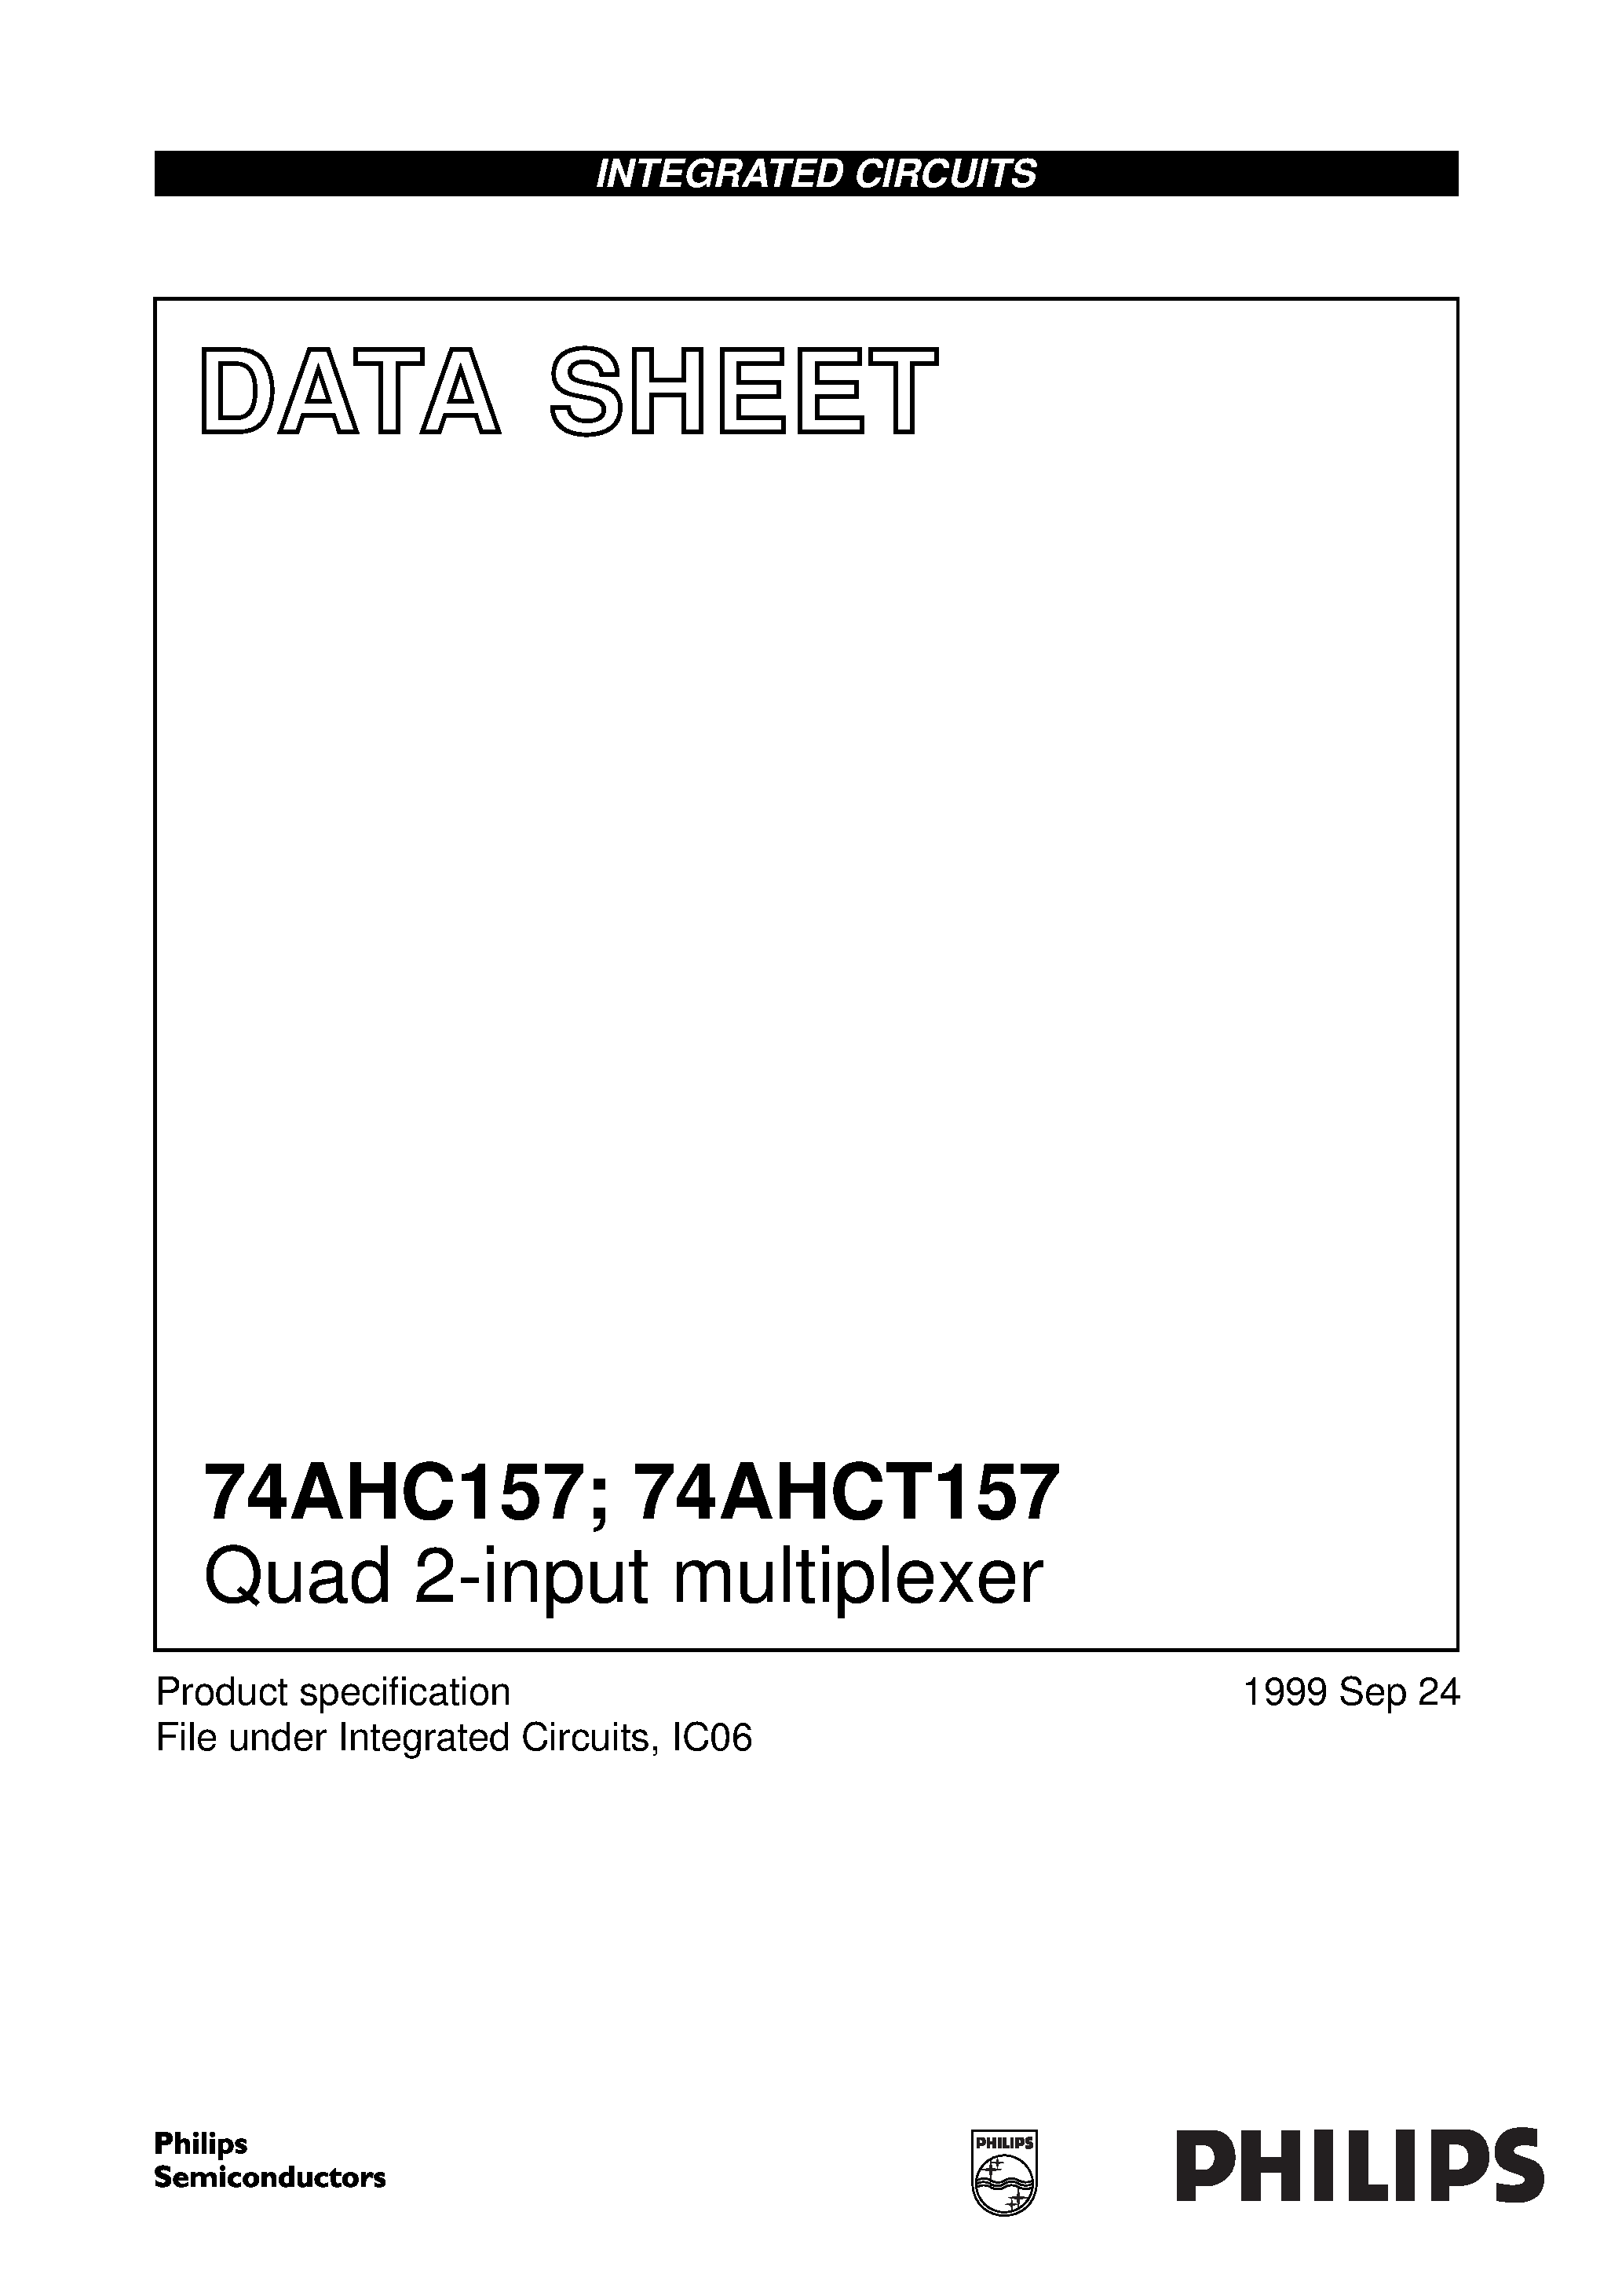 Даташит 74AHC157D - Quad 2-input multiplexer страница 1